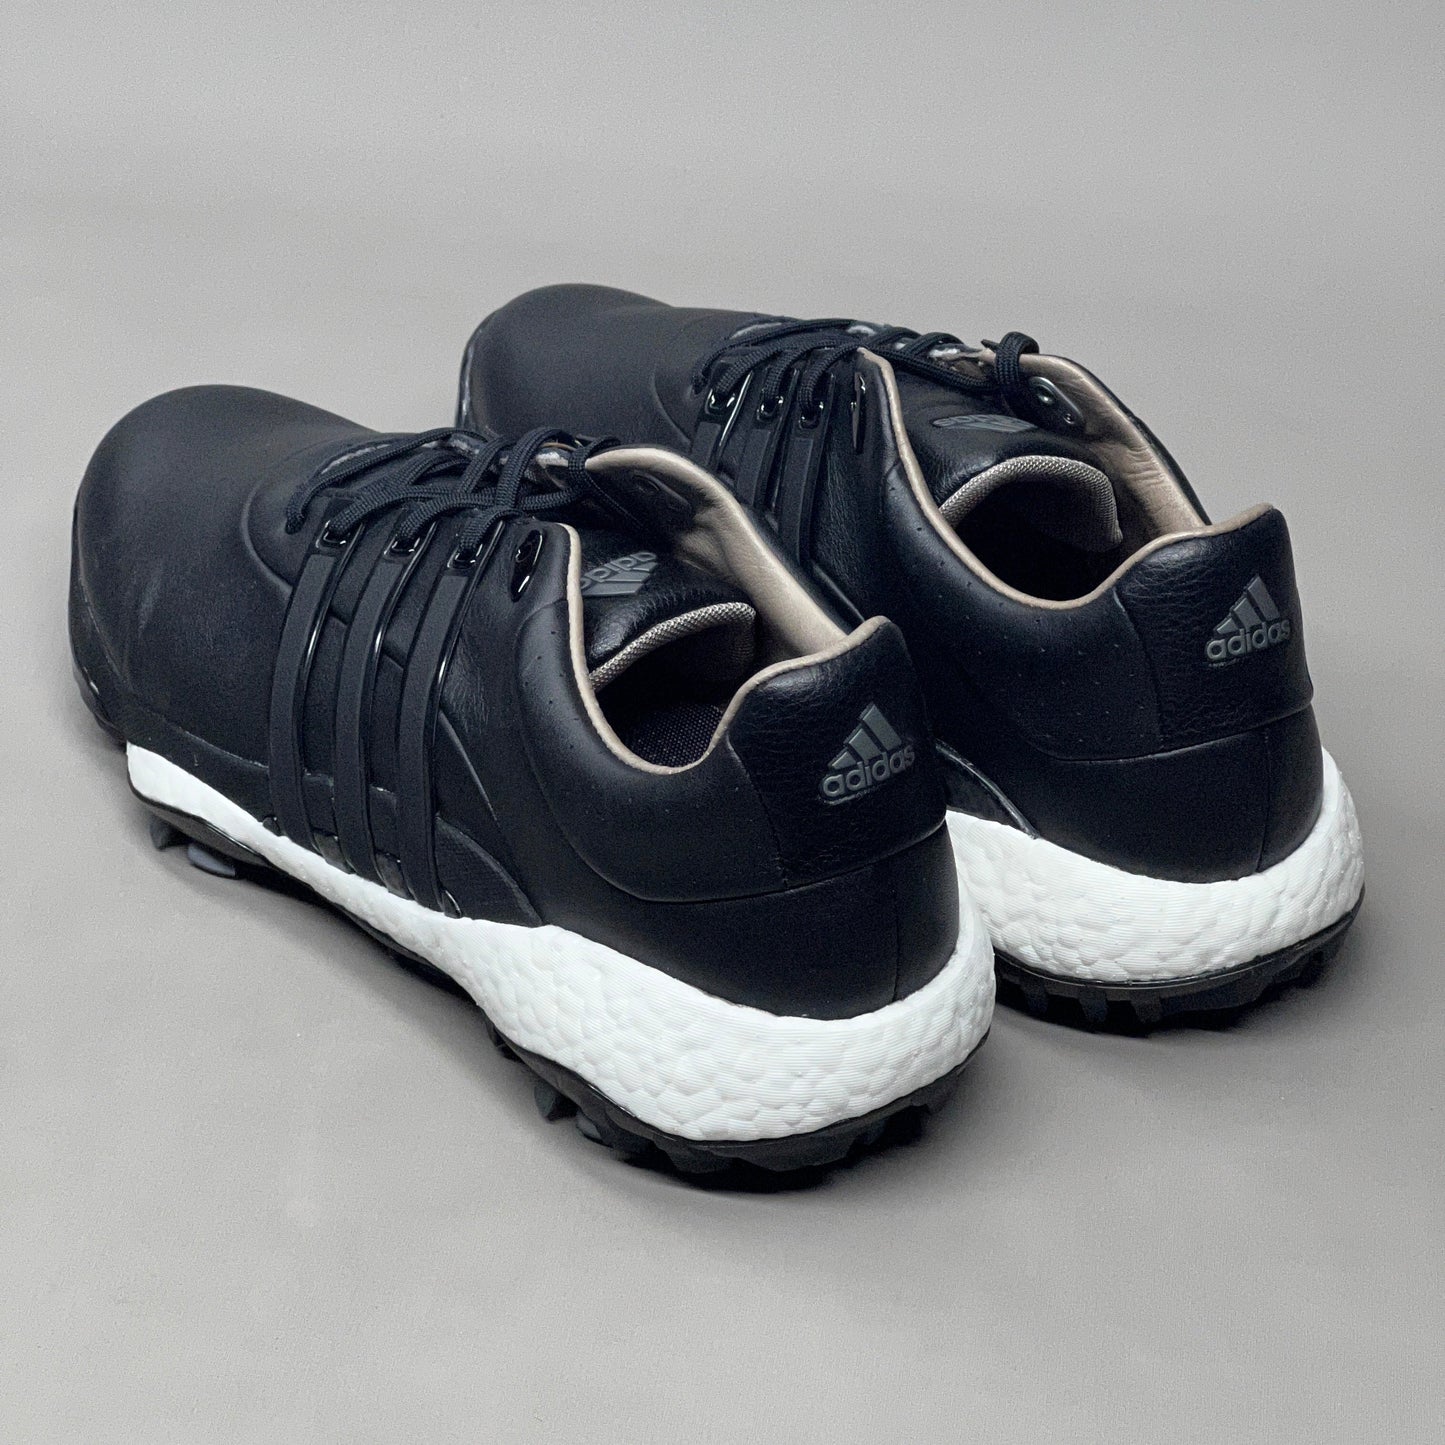 ADIDAS Golf Shoes TOUR360 22 Leather Men's Sz 7.5 Black / Iron Metallic GZ3158 (New)